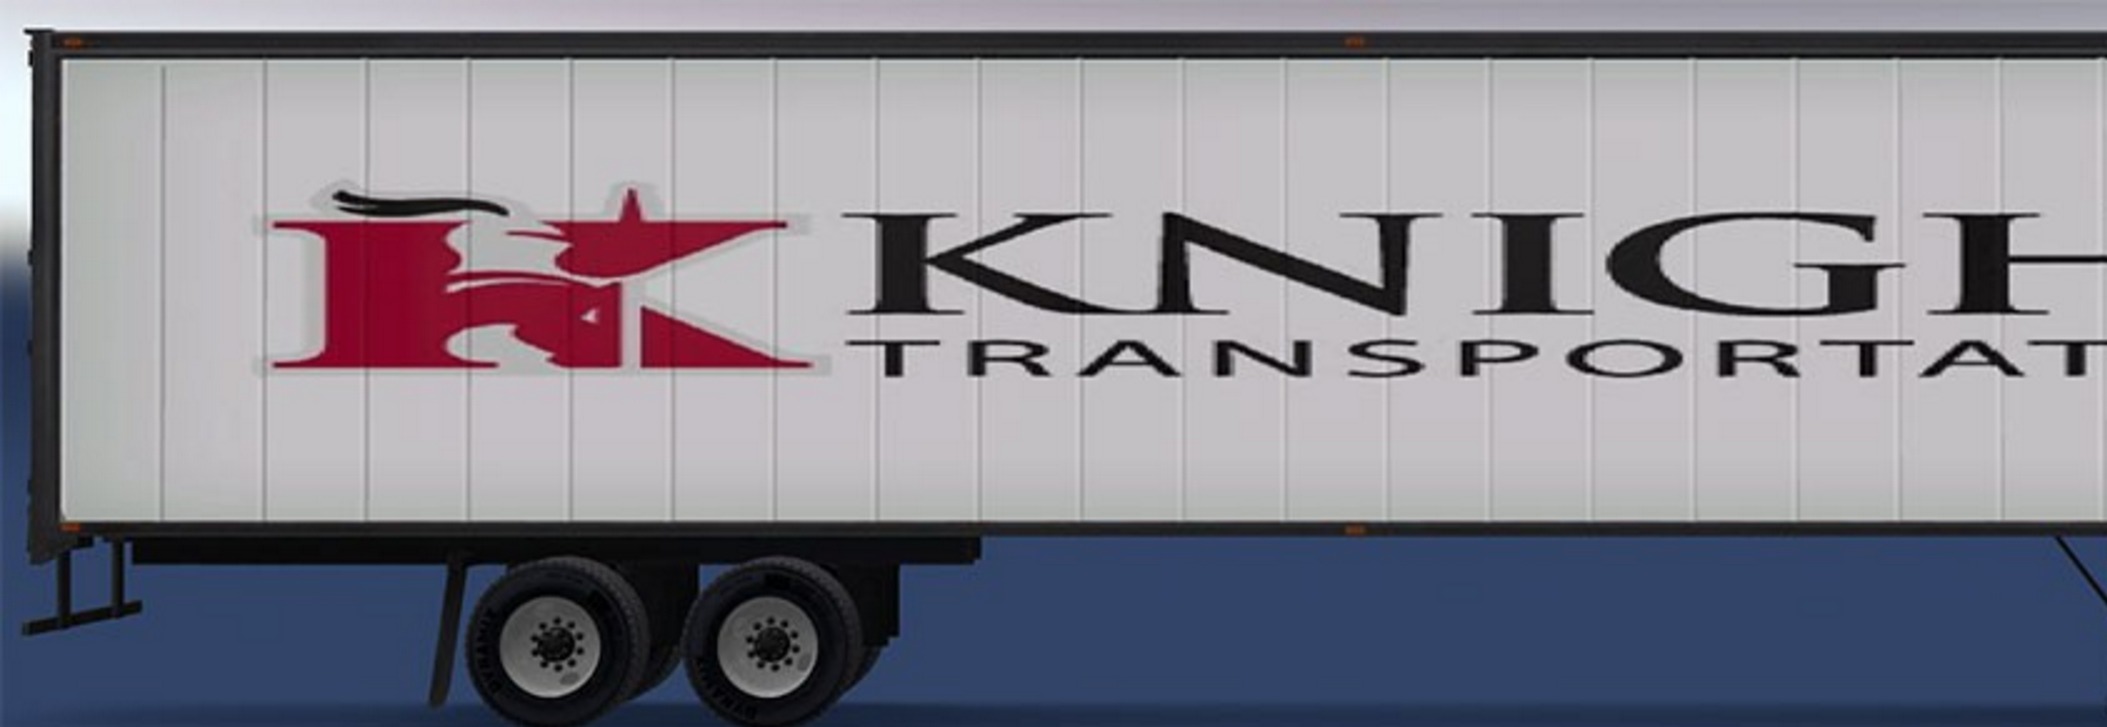 Knight transportation trailer